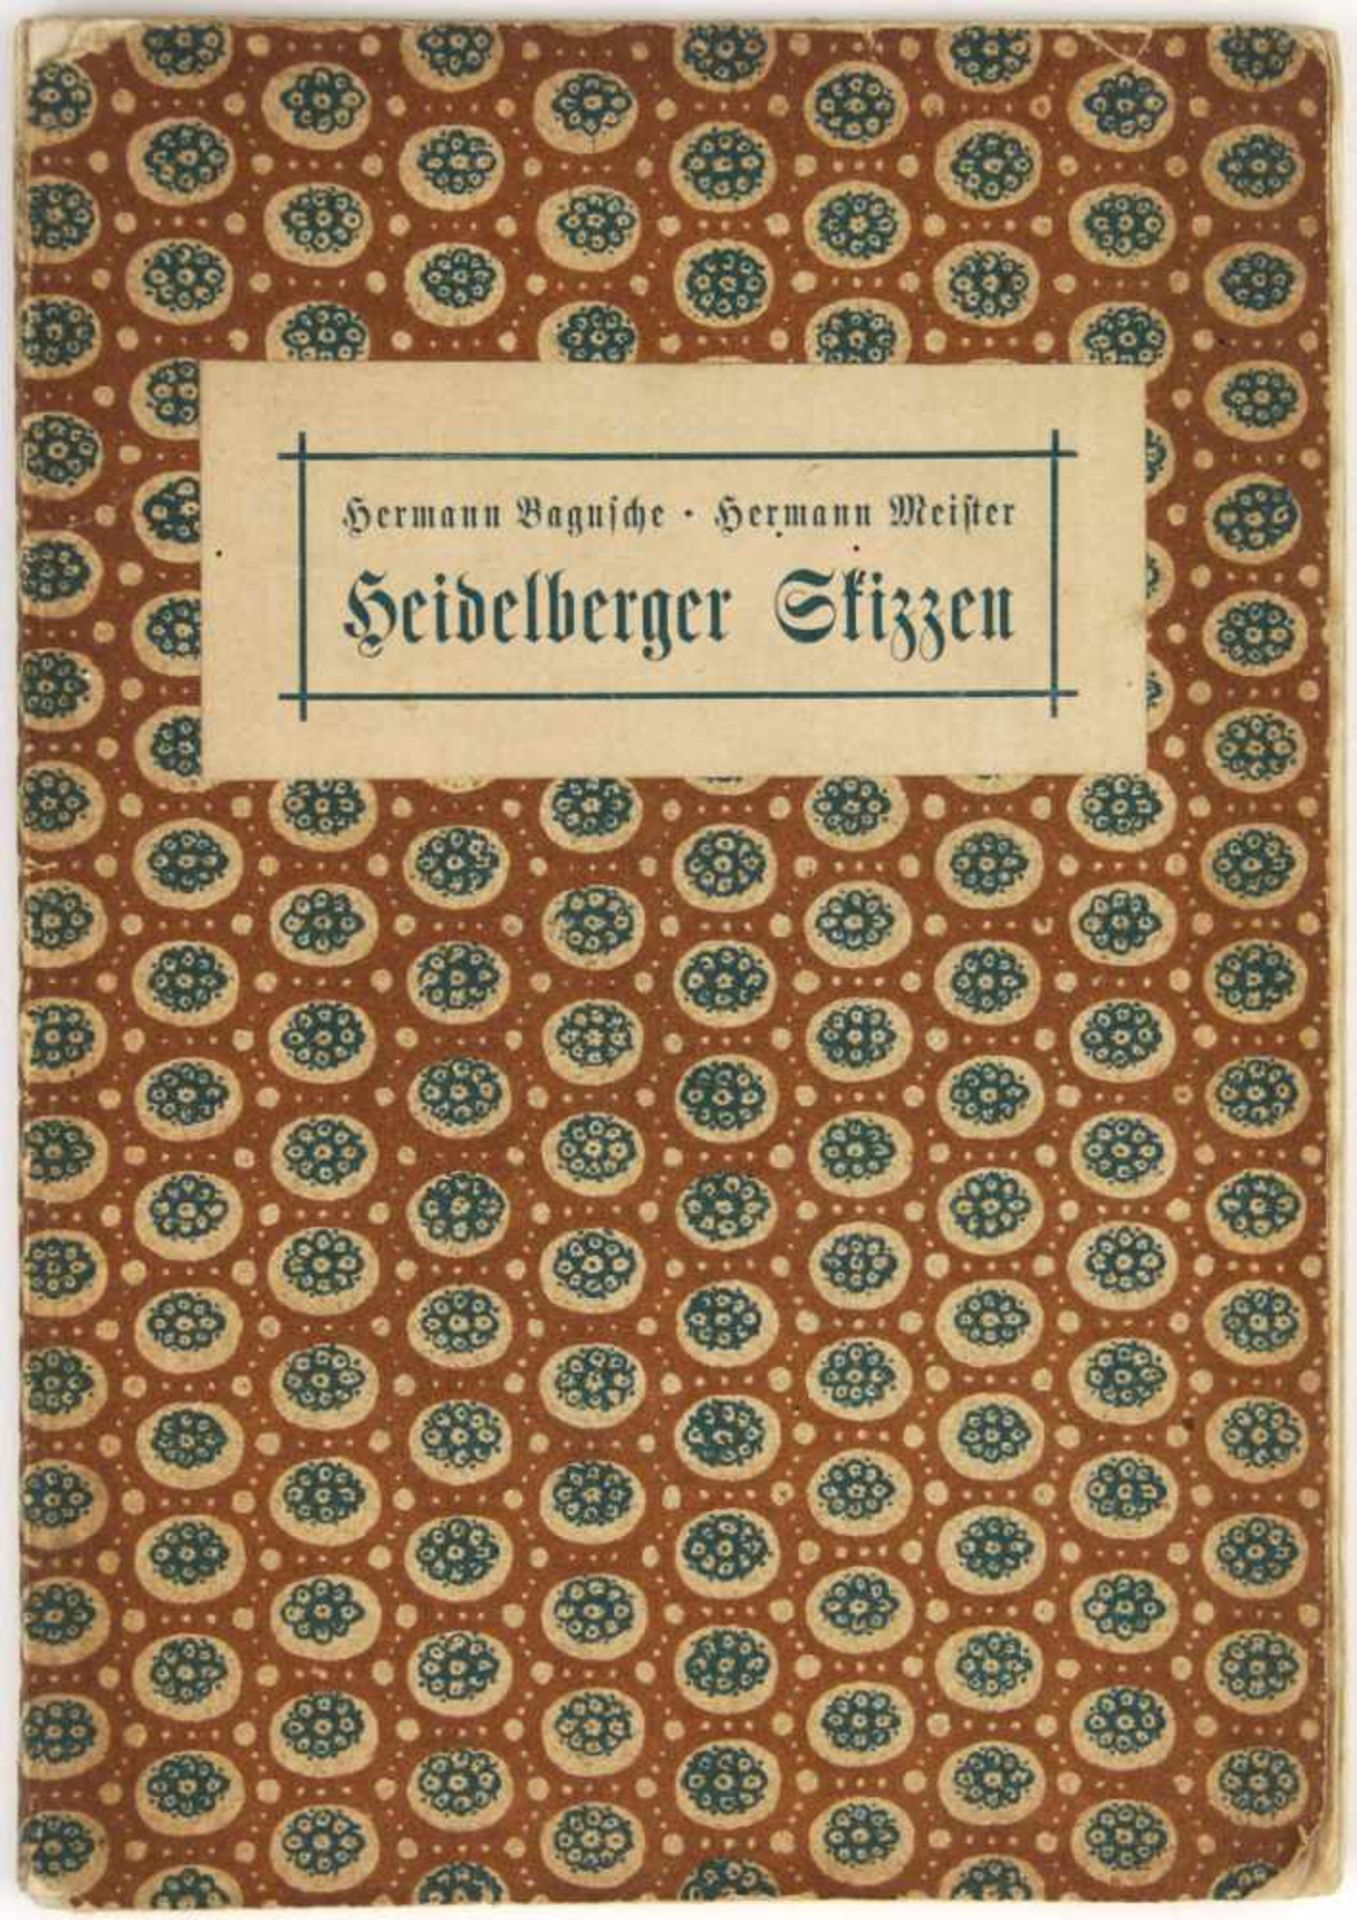 Bagusche, Hermann und Hermann Meister:Heidelberger Skizzen. Heidelberg, Friedrich Schulze 1911. 35